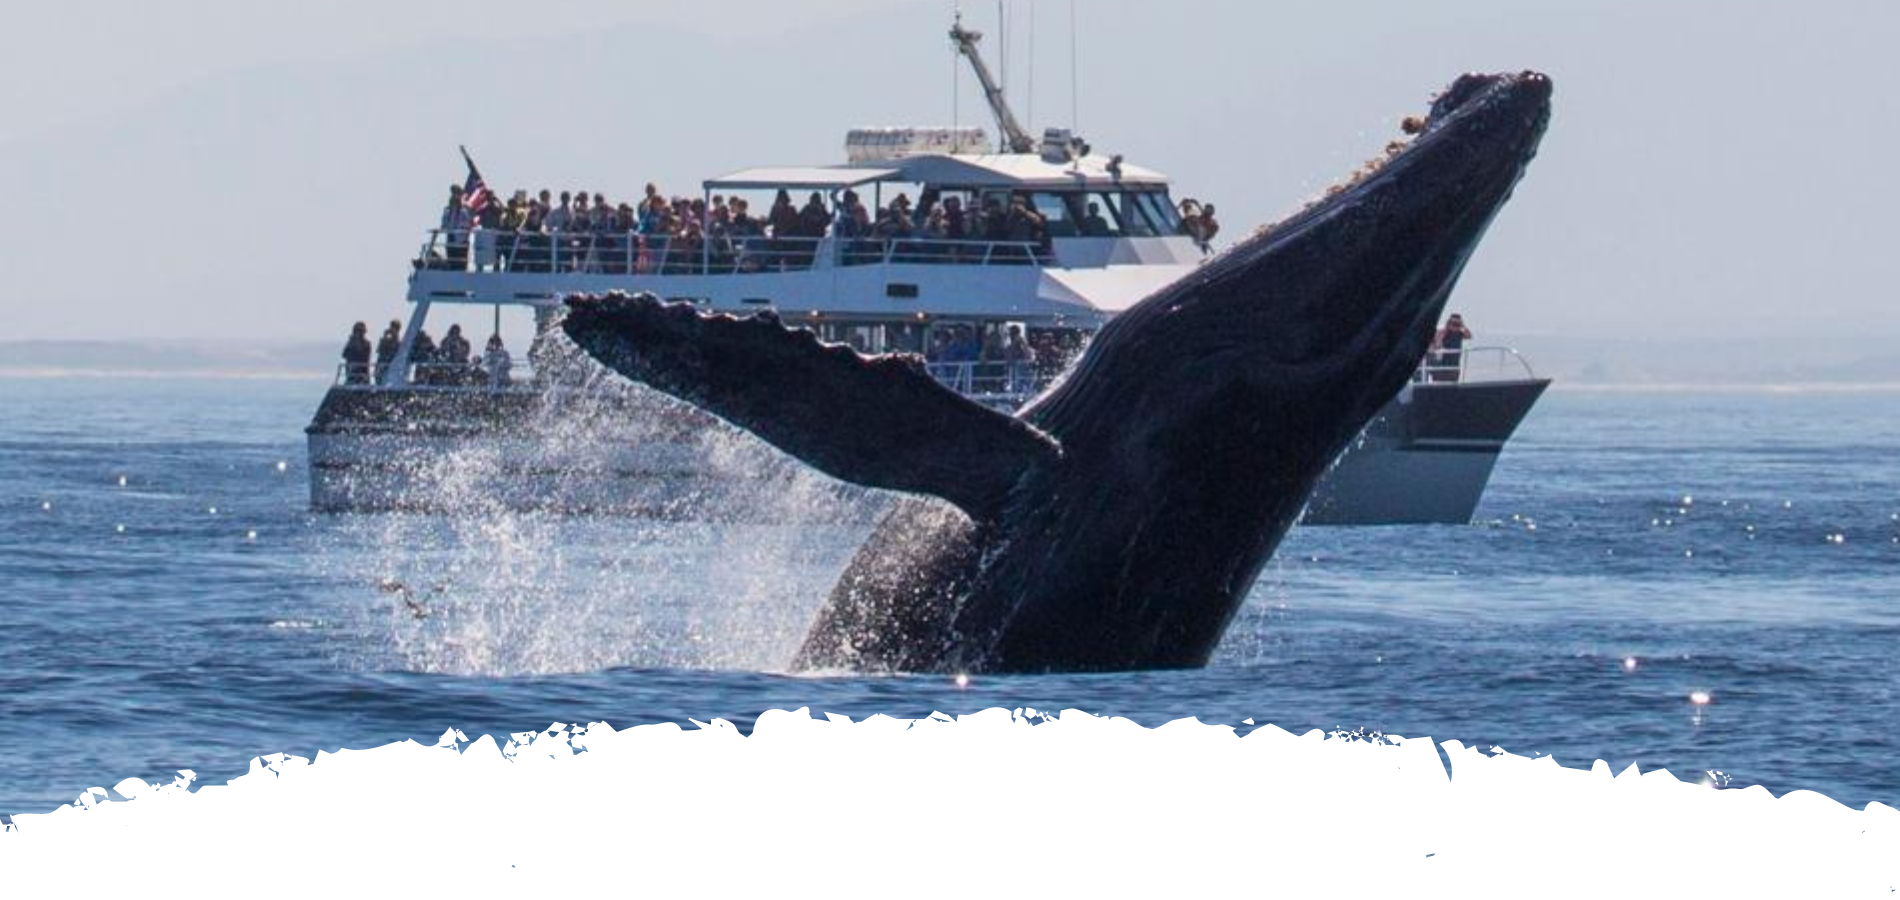 Whale watching in Sri Lanka